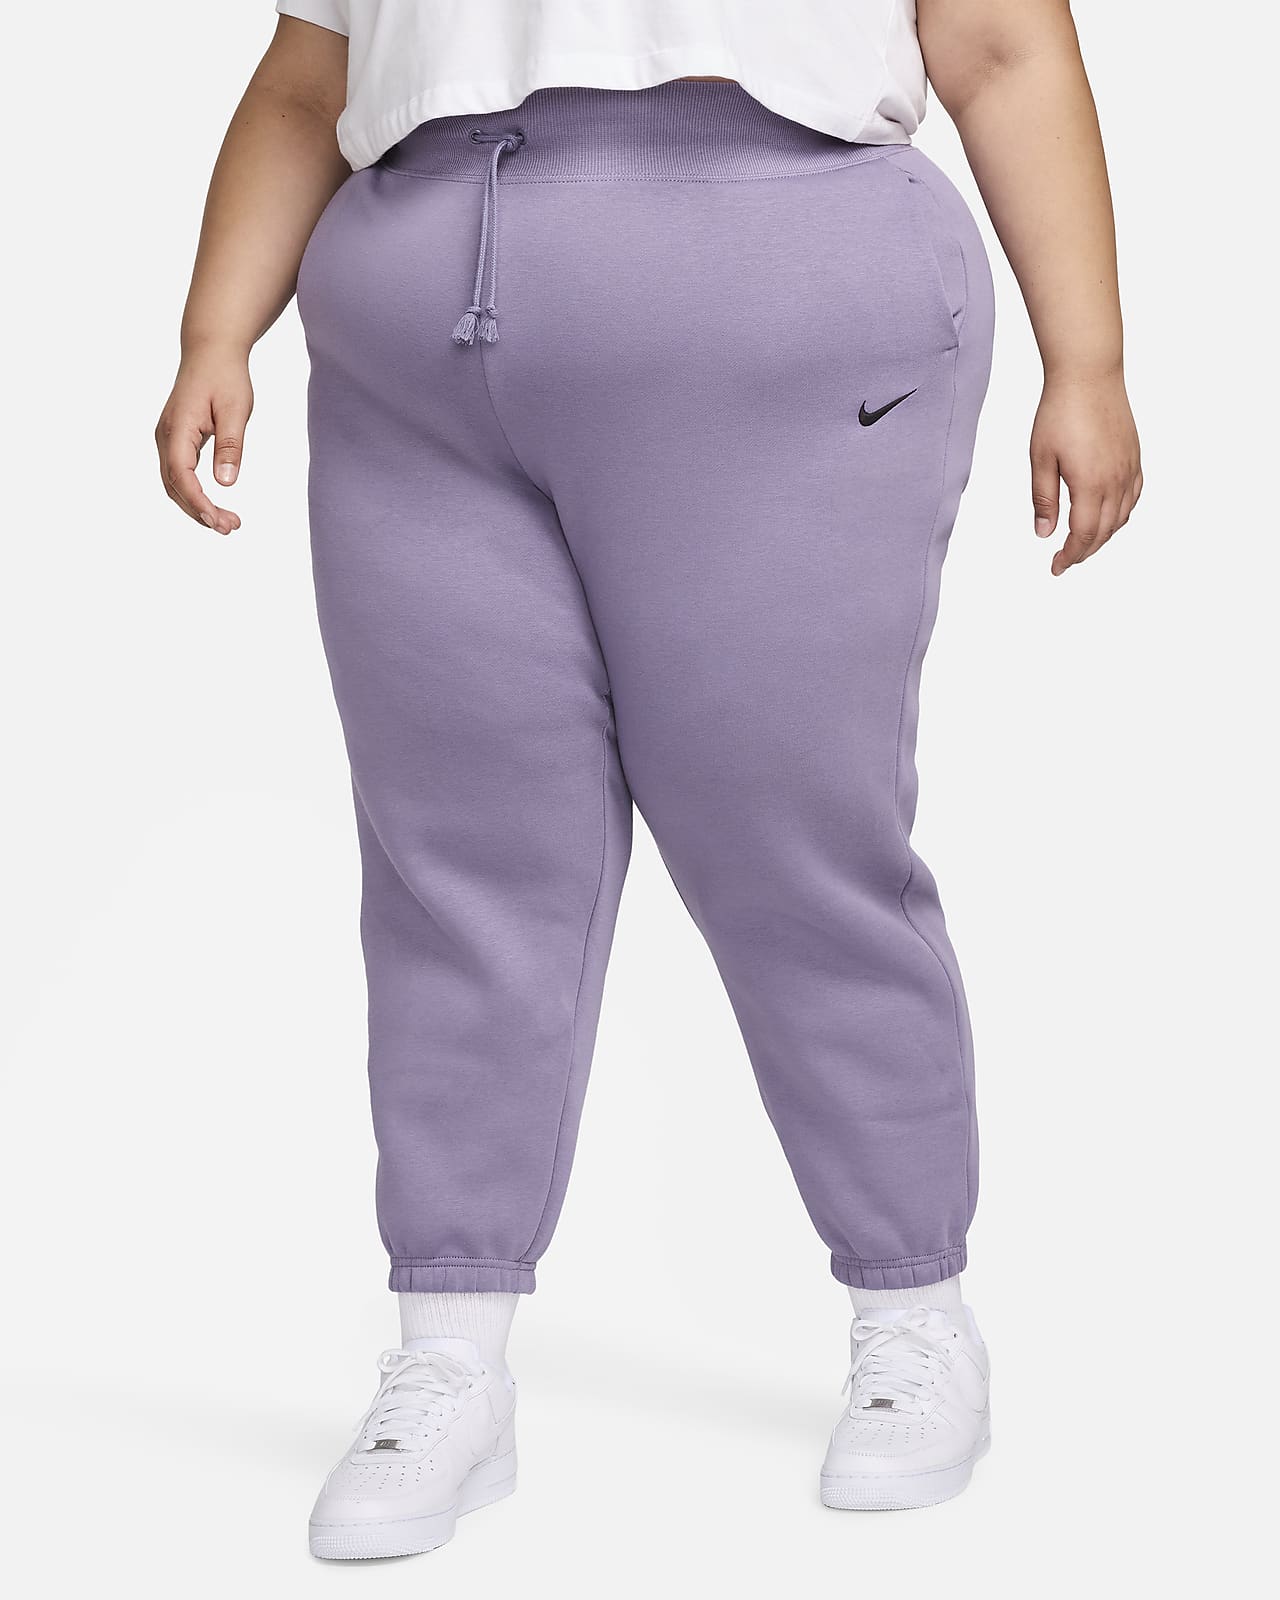 5 Colors XS-XXL）Women's Sweatpants Jogging Pants Plus Size Women